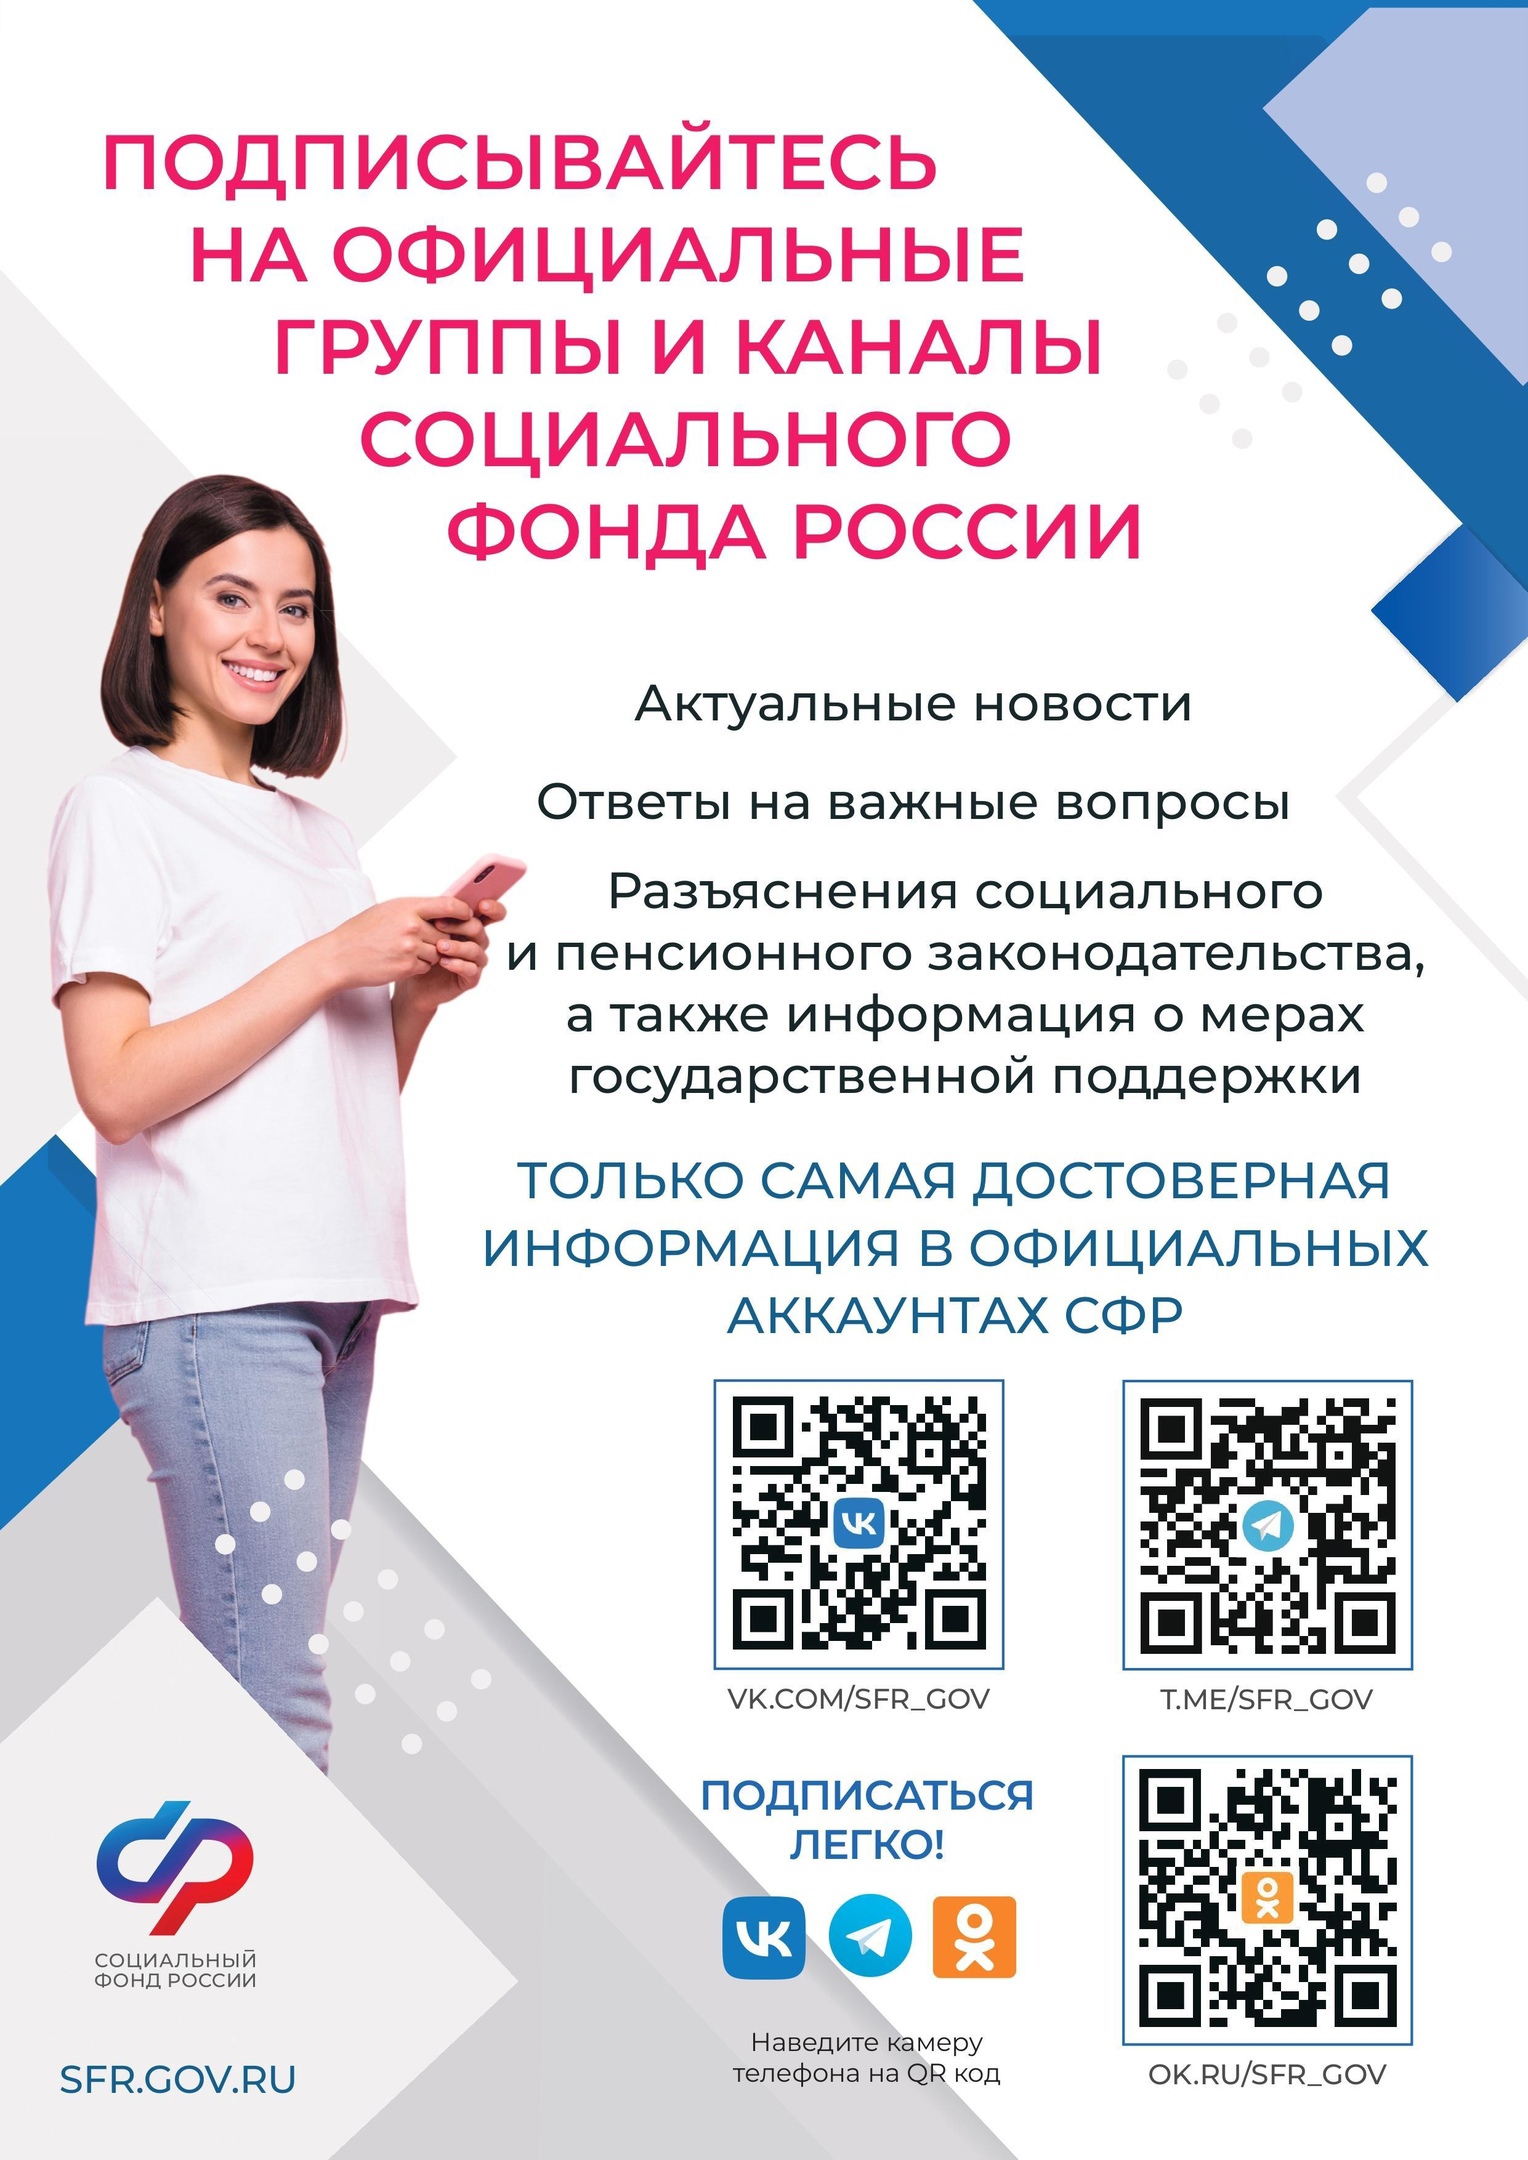 Информируем вас о действующих мерах социальной защиты (поддержки), пособиях и иных выплатах, а также возможностях электронных сервисов Социального фонда России.